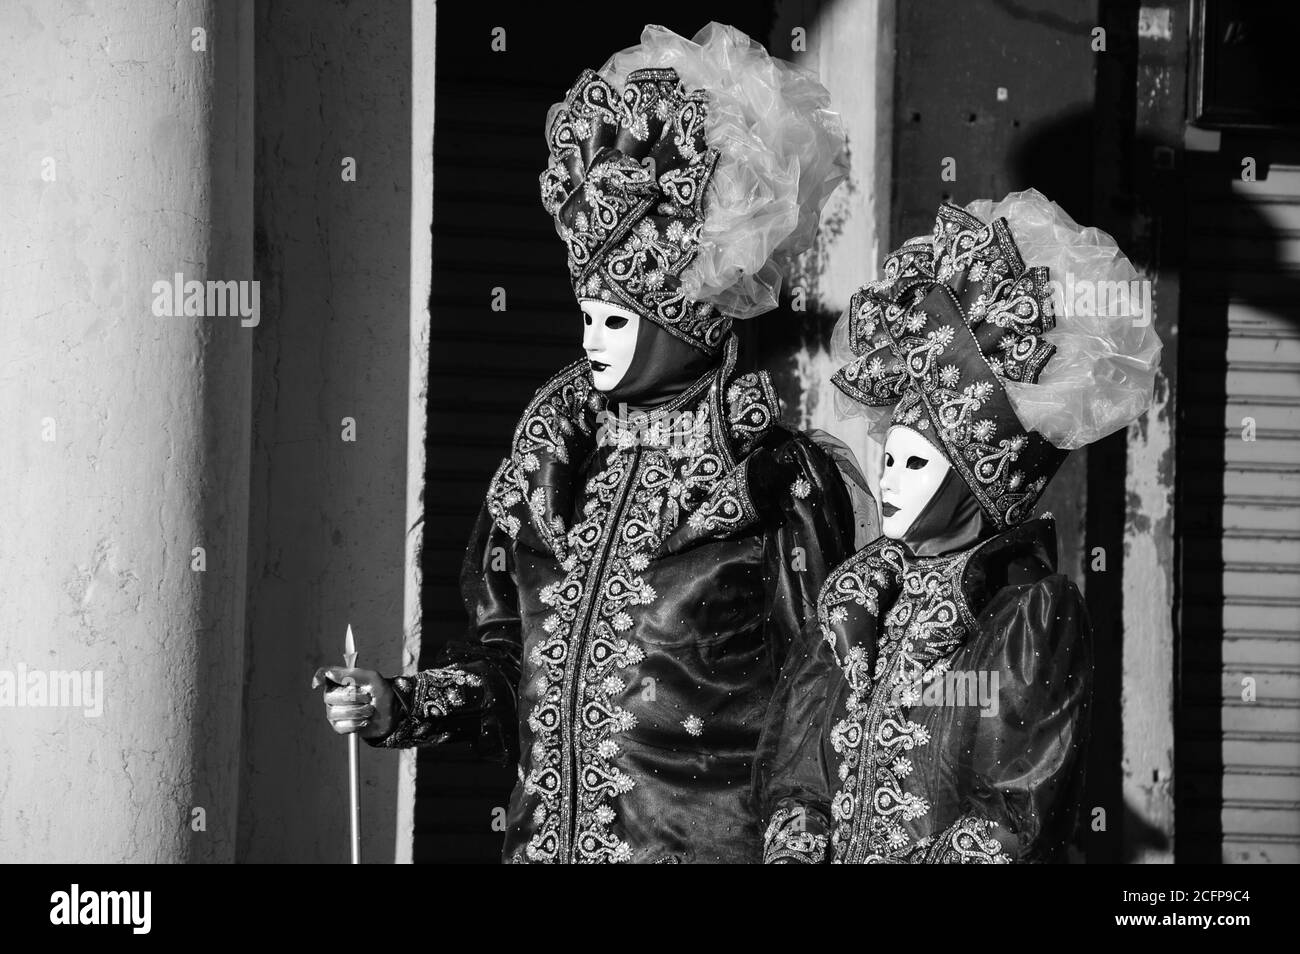 VENISE, ITALIE - 16 FÉVRIER 2015 : deux masques sur la place Saint-Marc pendant le carnaval traditionnel. Le carnaval est un événement annuel qui se termine le mardi de Shrove. Banque D'Images